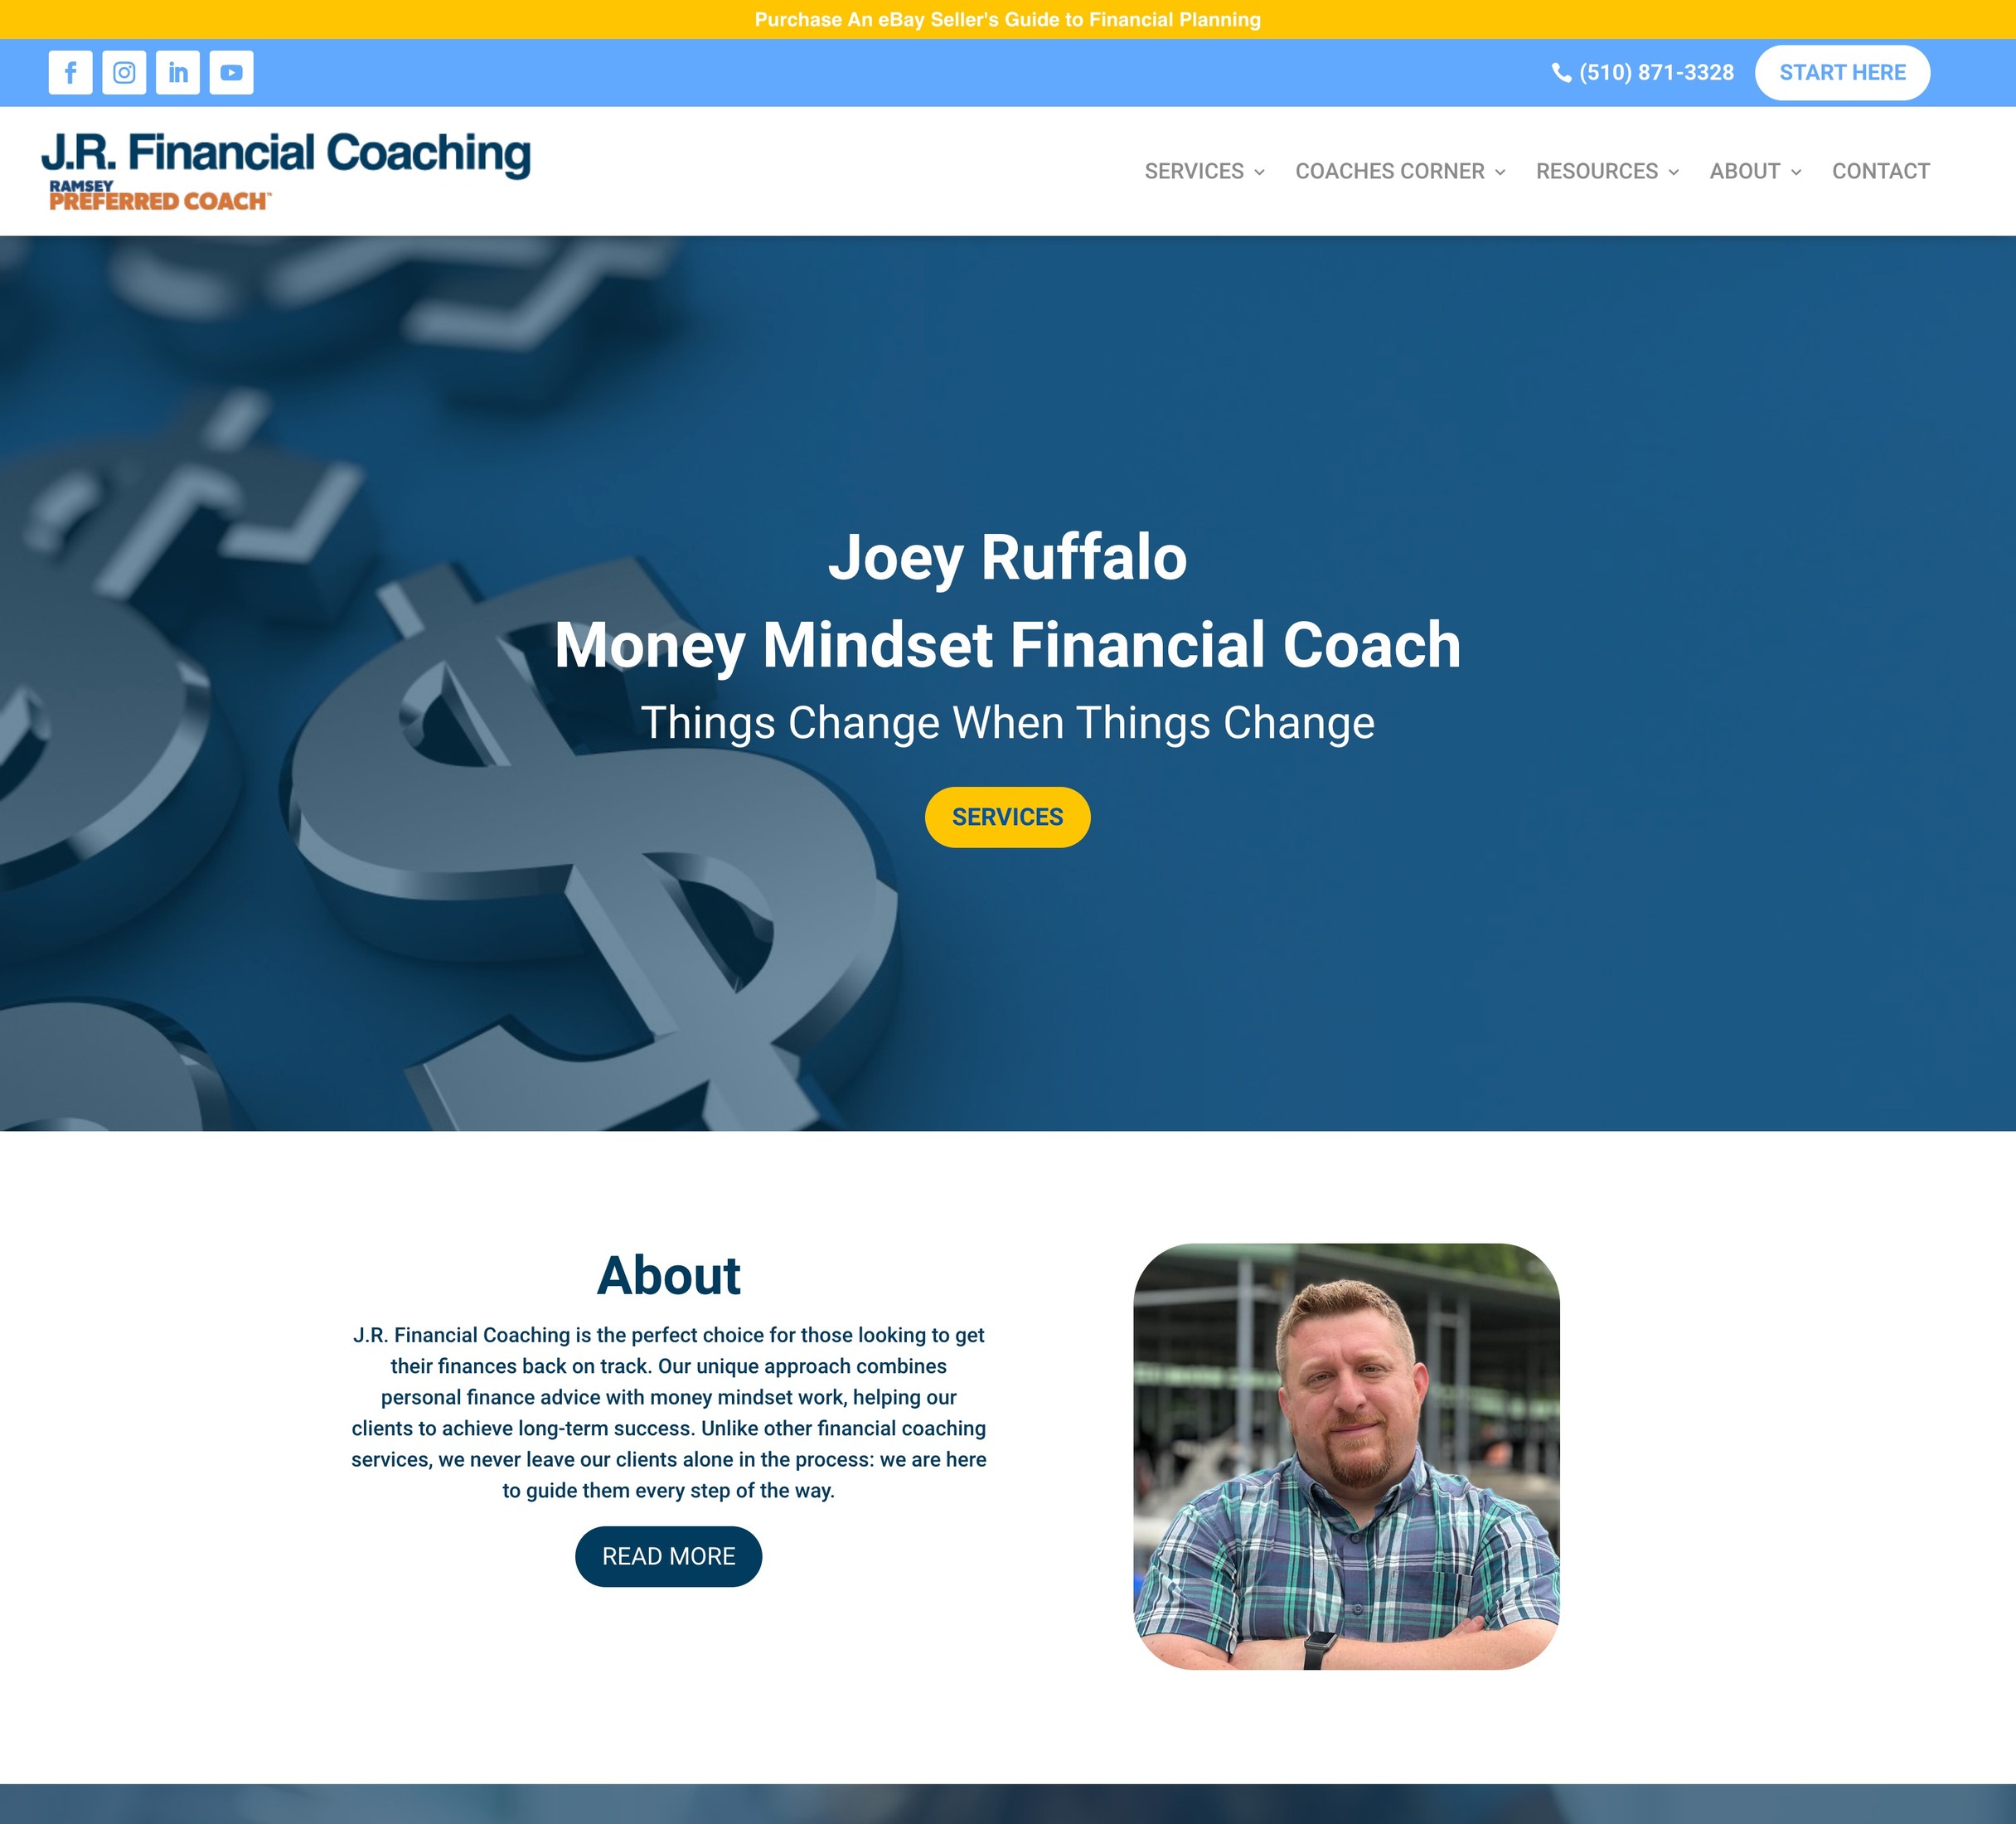 J.R. Financial Coaching